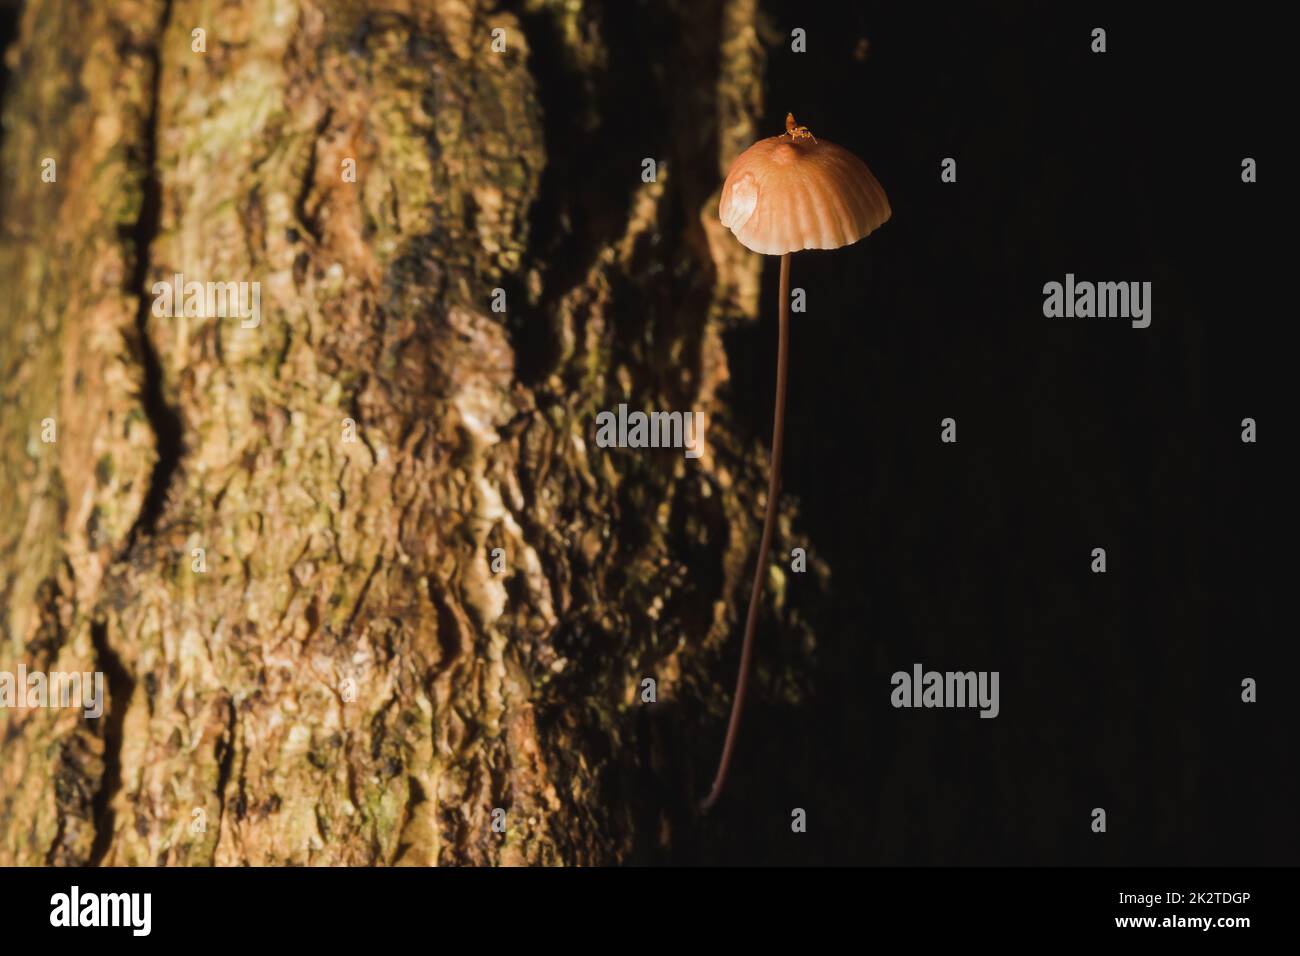 Petits champignons bruns sur l'écorce de la tige Banque D'Images